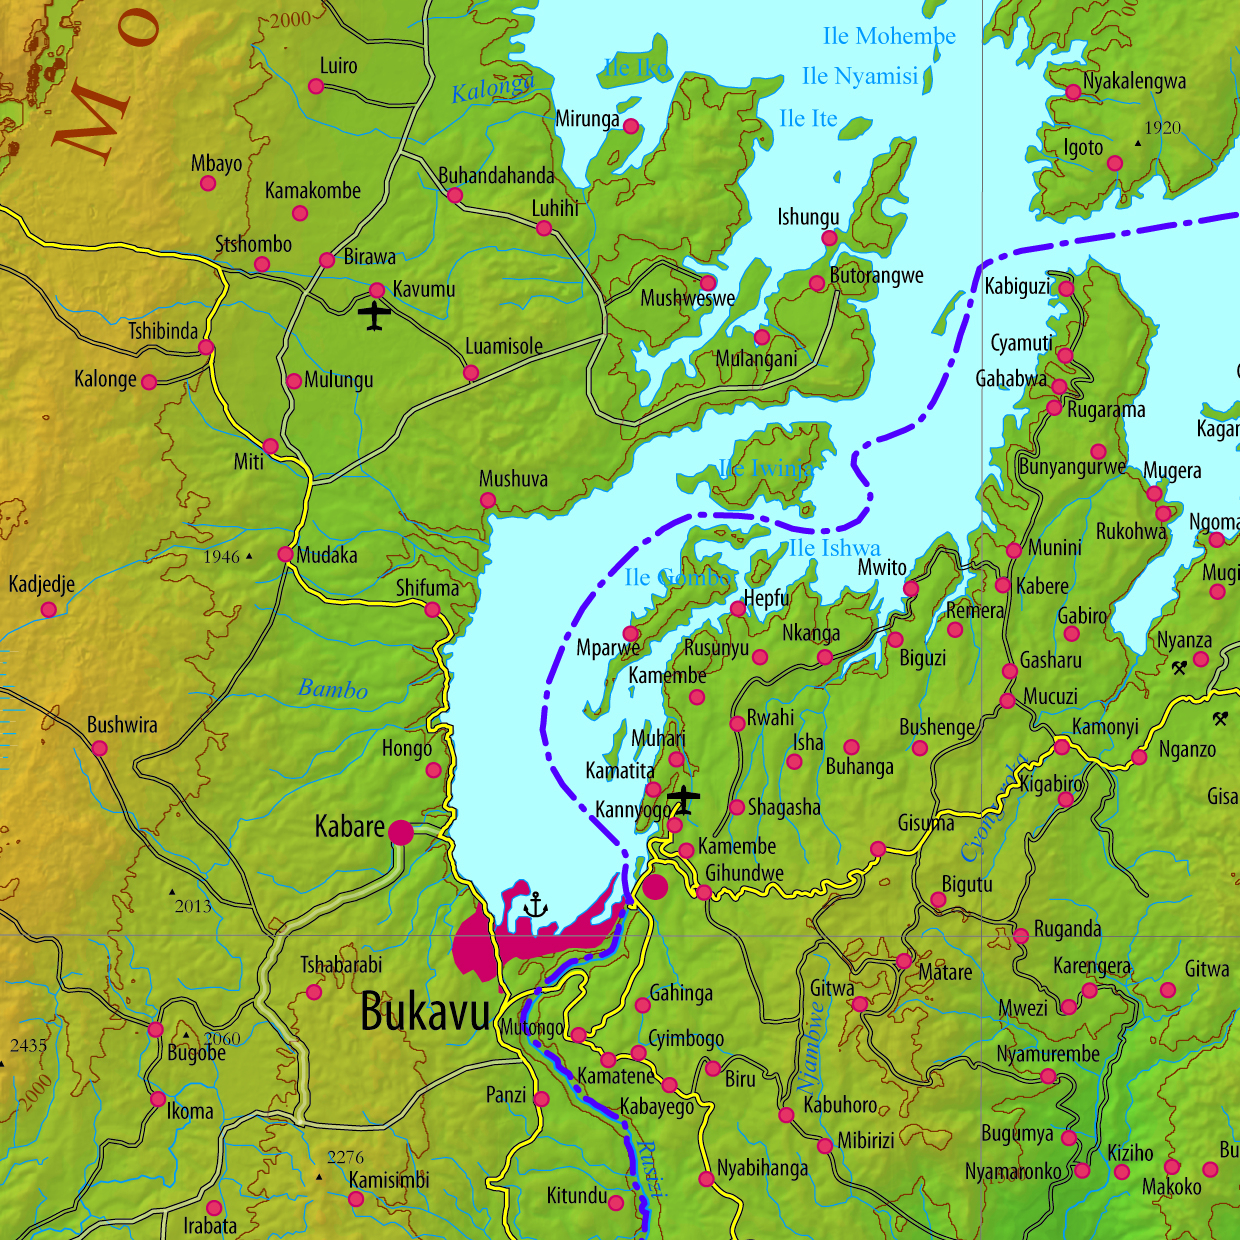 Karte: Topographische Übersichtskarte der Region Lake Kivu